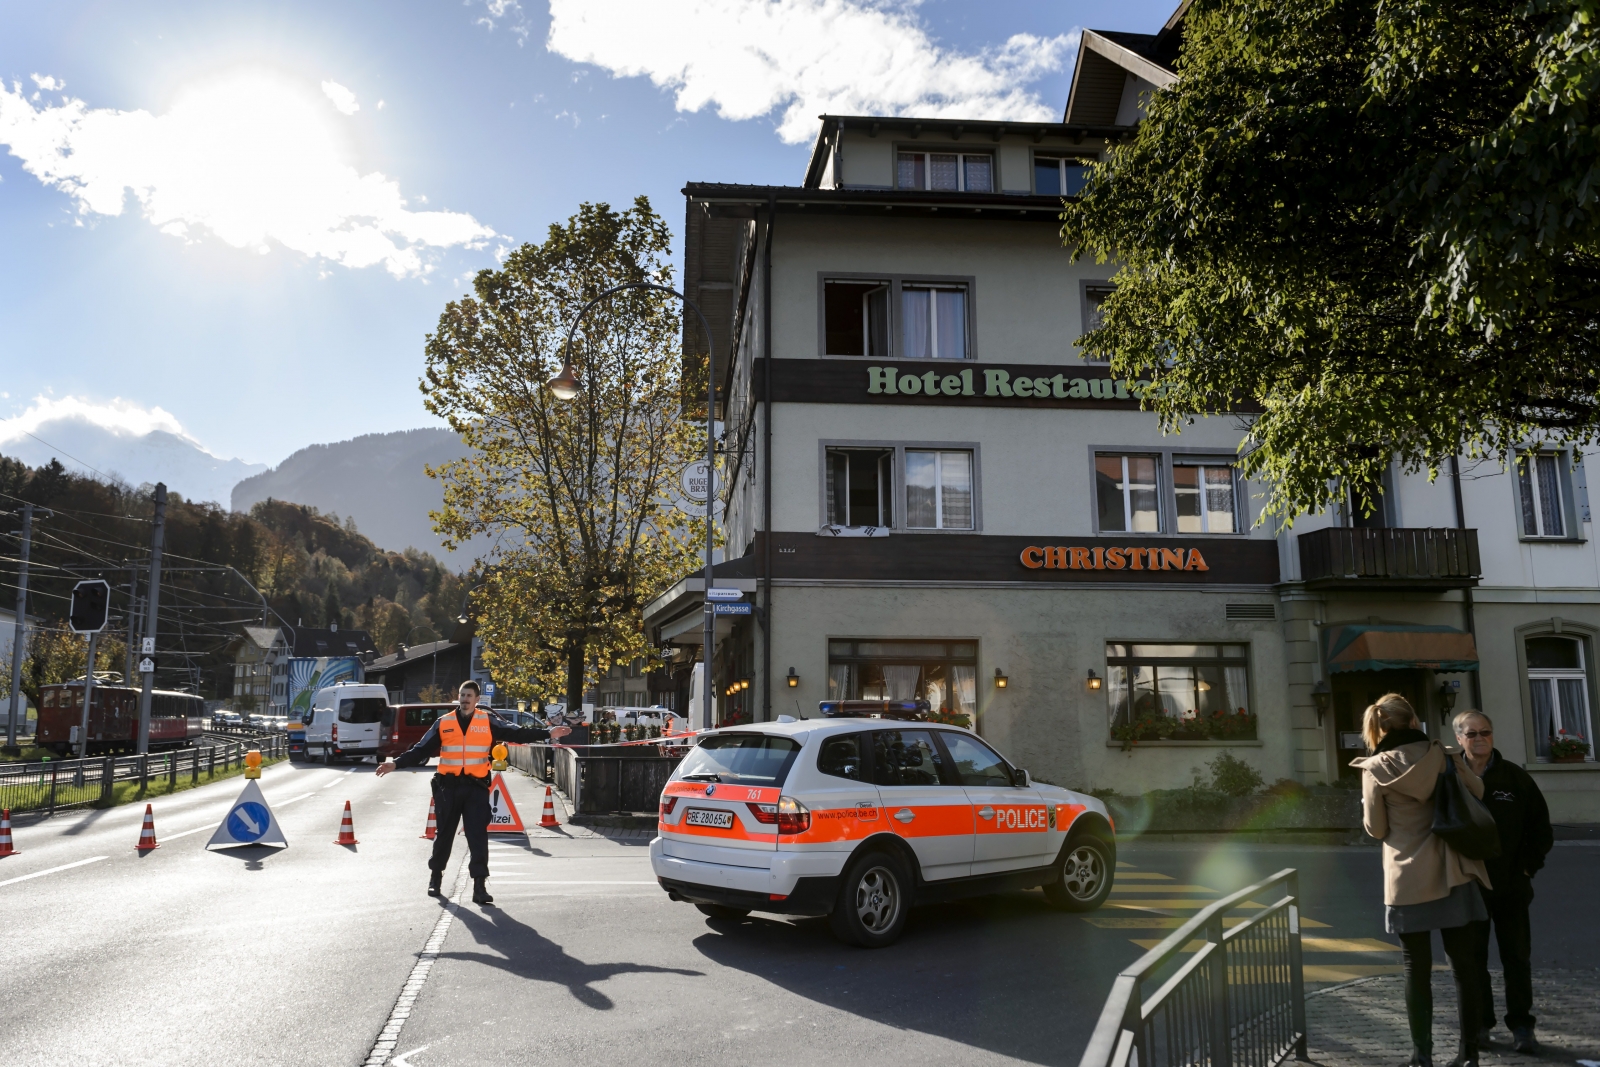 Switzerland Shooting: Three Dead in Alpine Wilderswil Village1600 x 1067